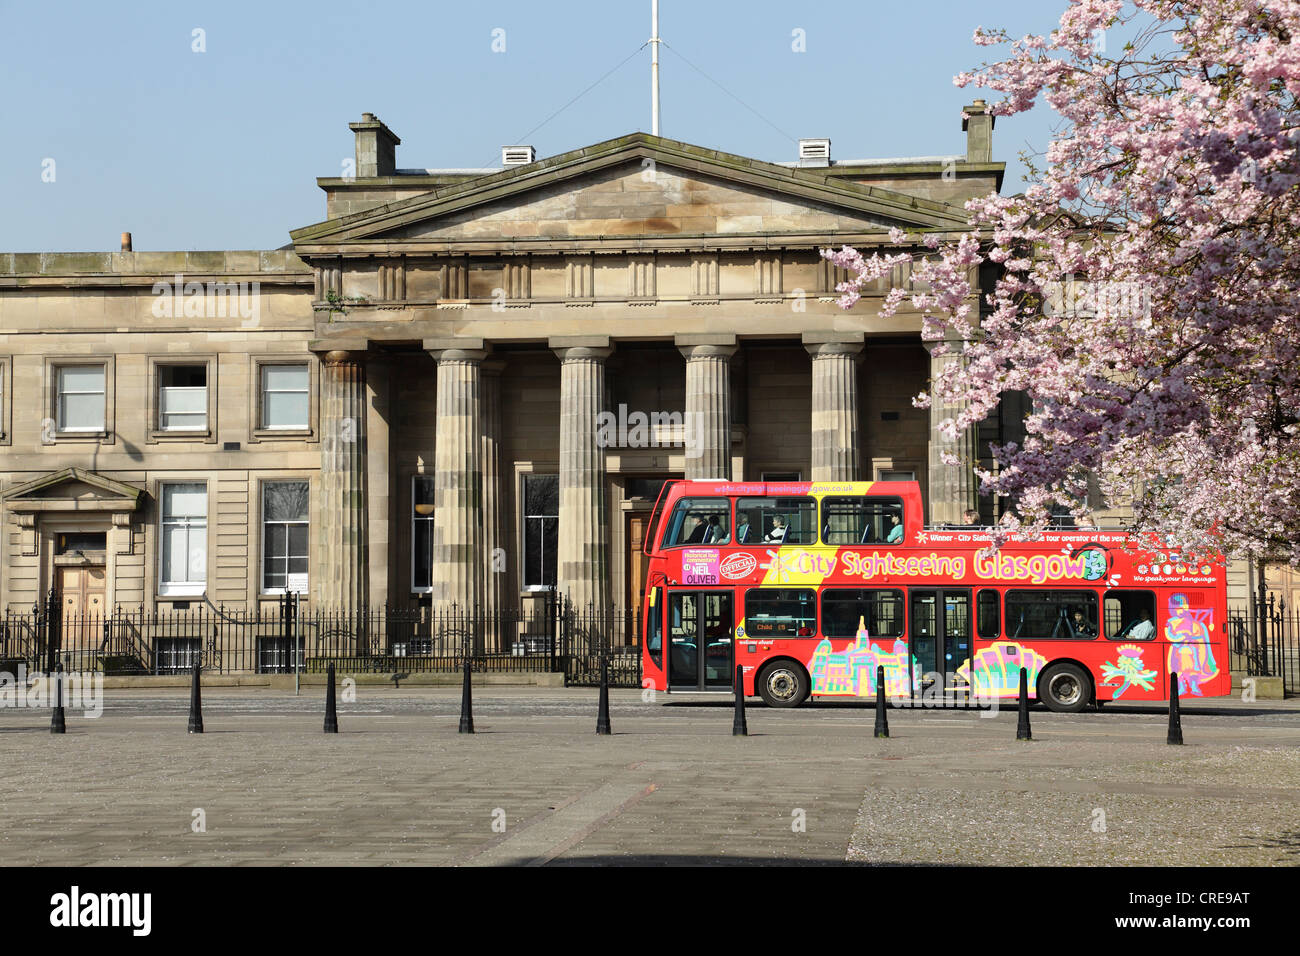 Glasgow City Sightseeing Tour Bus vorbei am Old High Court Gebäude auf Saltmarket in Spring, Schottland, Großbritannien Stockfoto